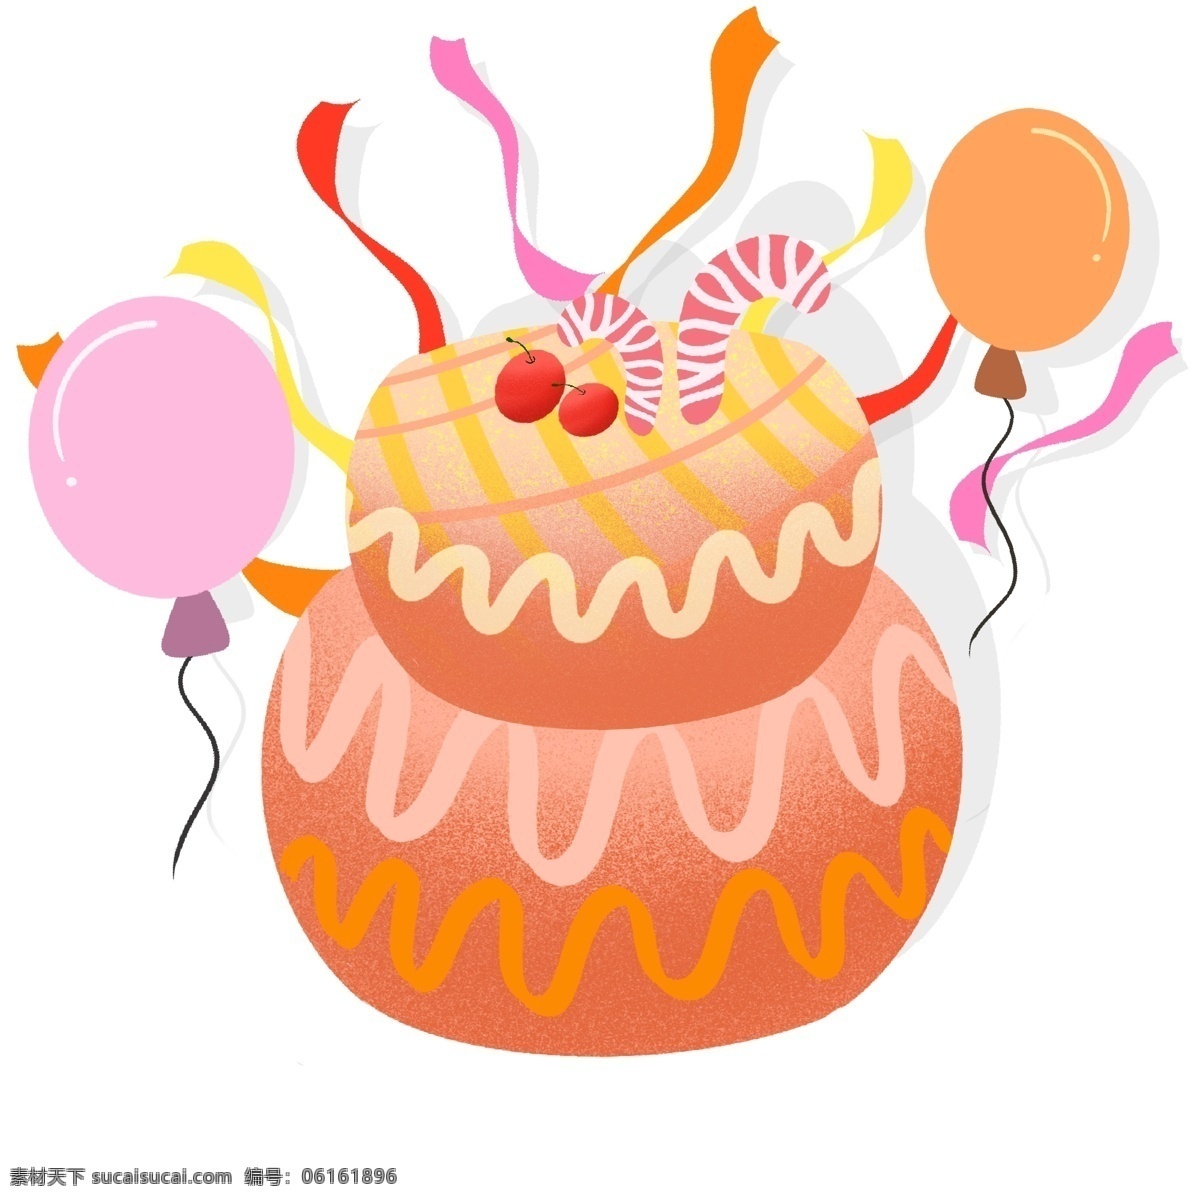 手绘 礼花 气球 生日蛋糕 彩色 樱桃 奶油 蛋糕 礼花气球 彩色礼花 奶油蛋糕